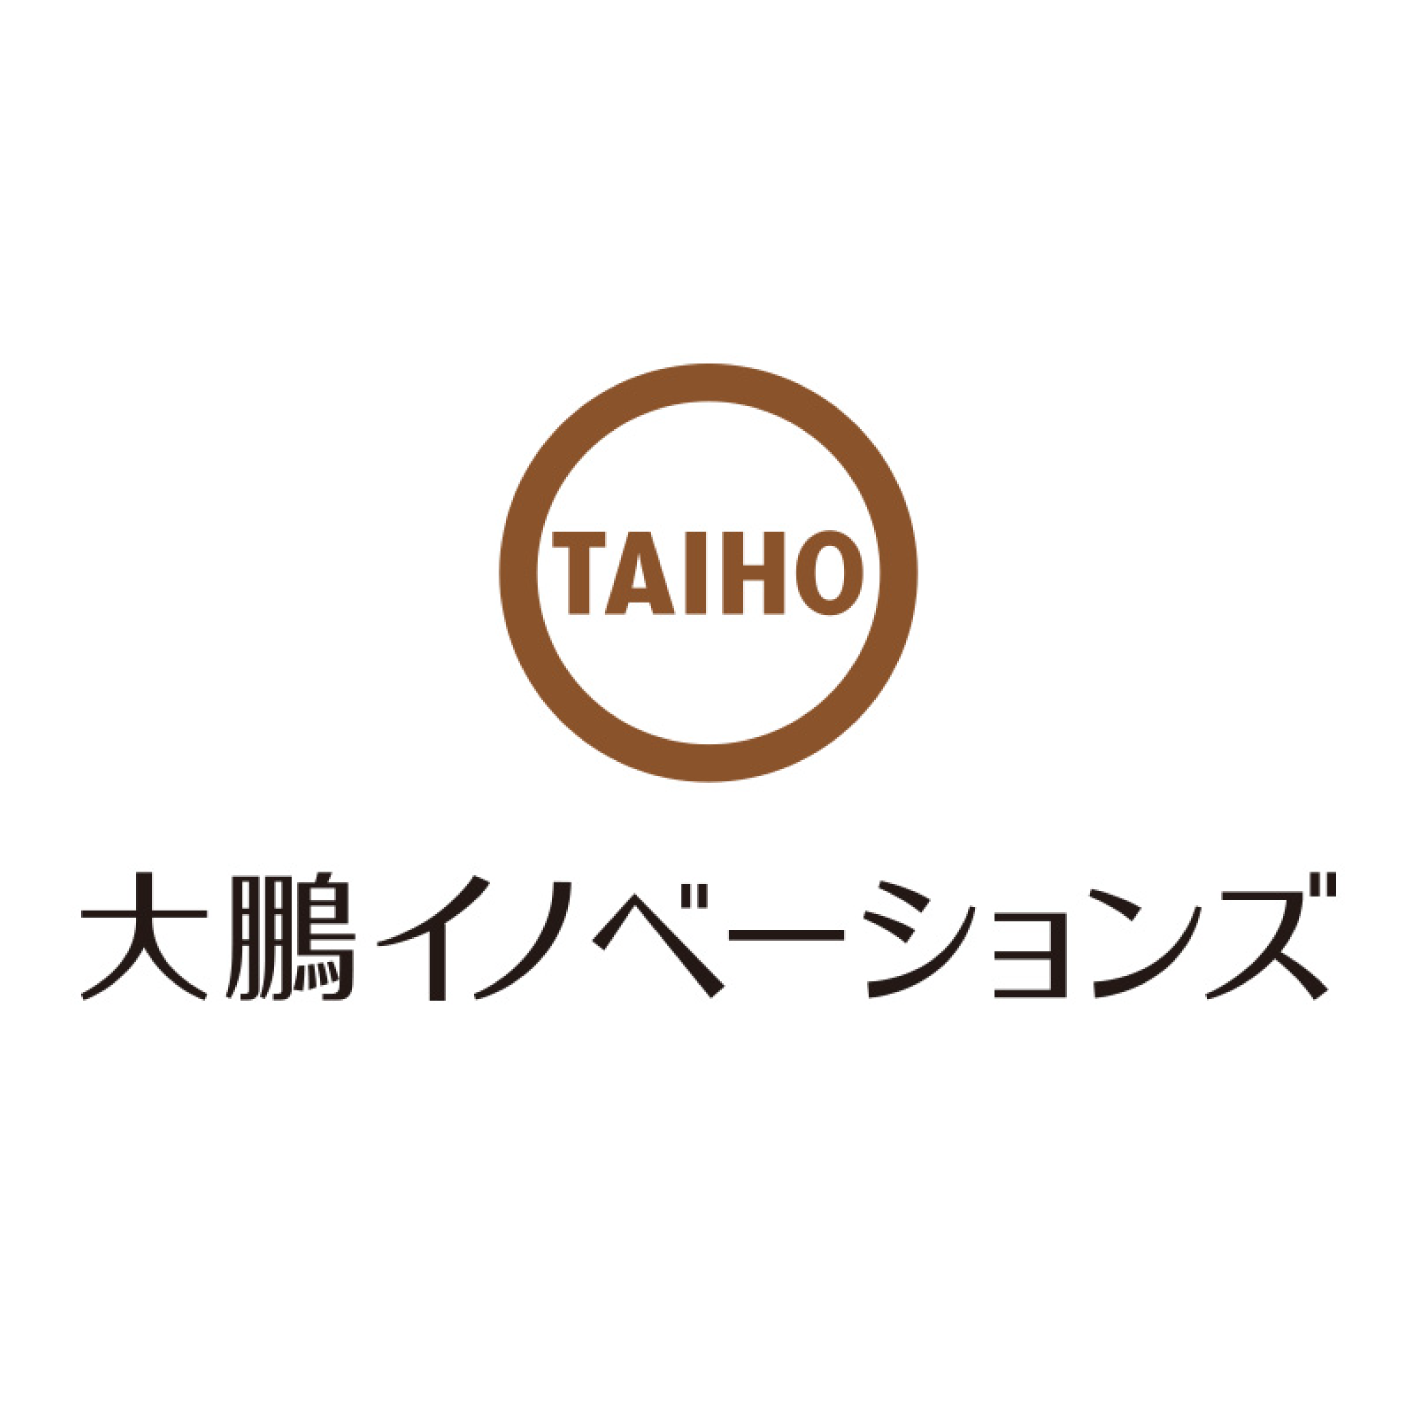 Taiho Innovation LLC